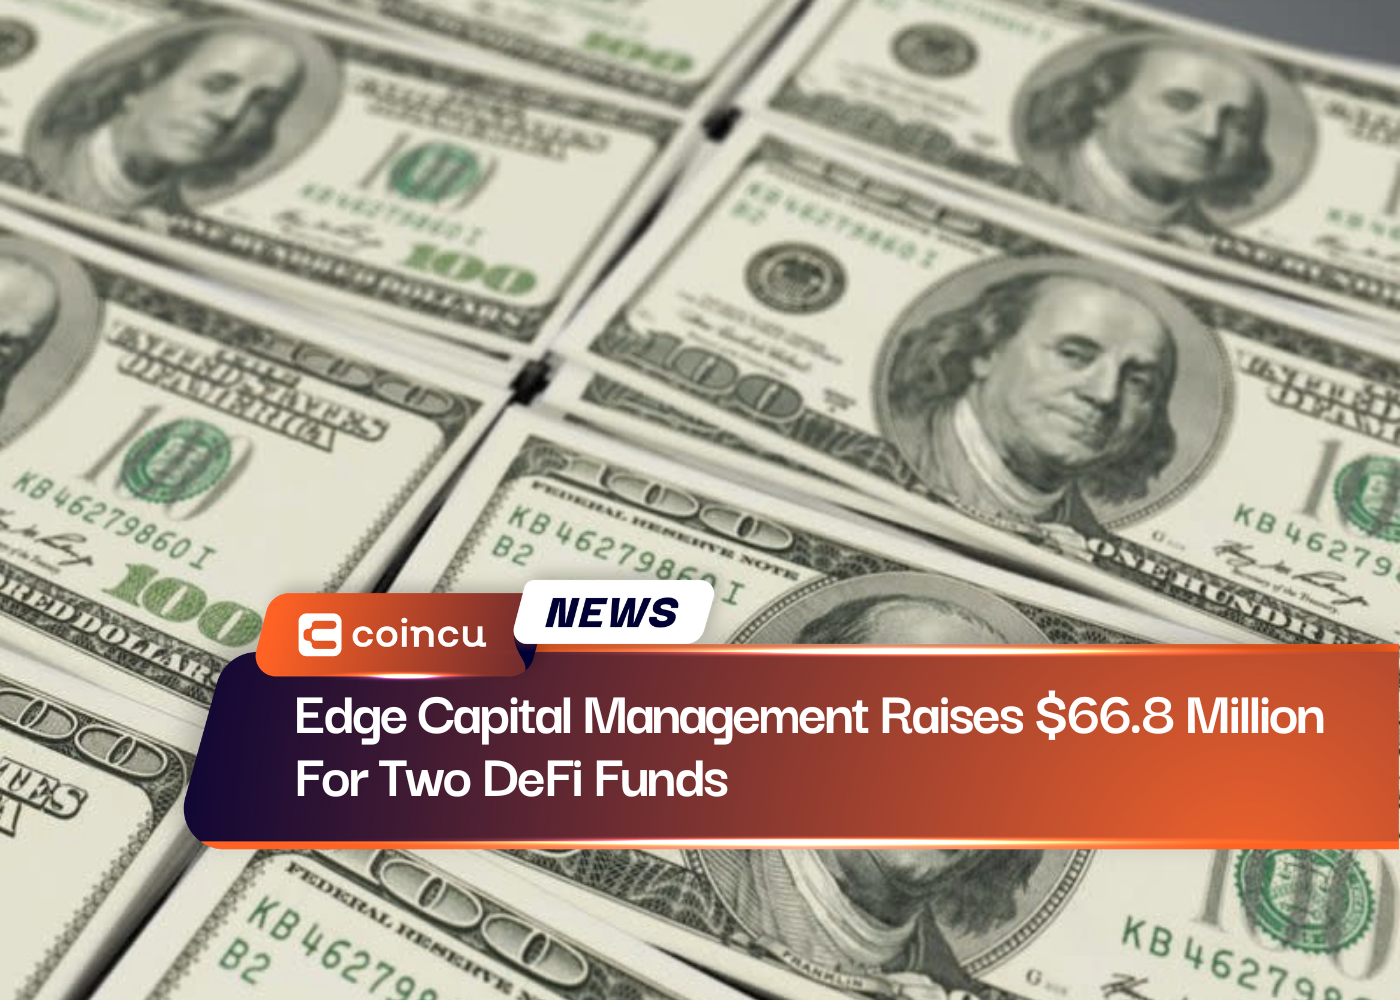 Edge Capital Management Raises $66.8 Million For Two DeFi Funds